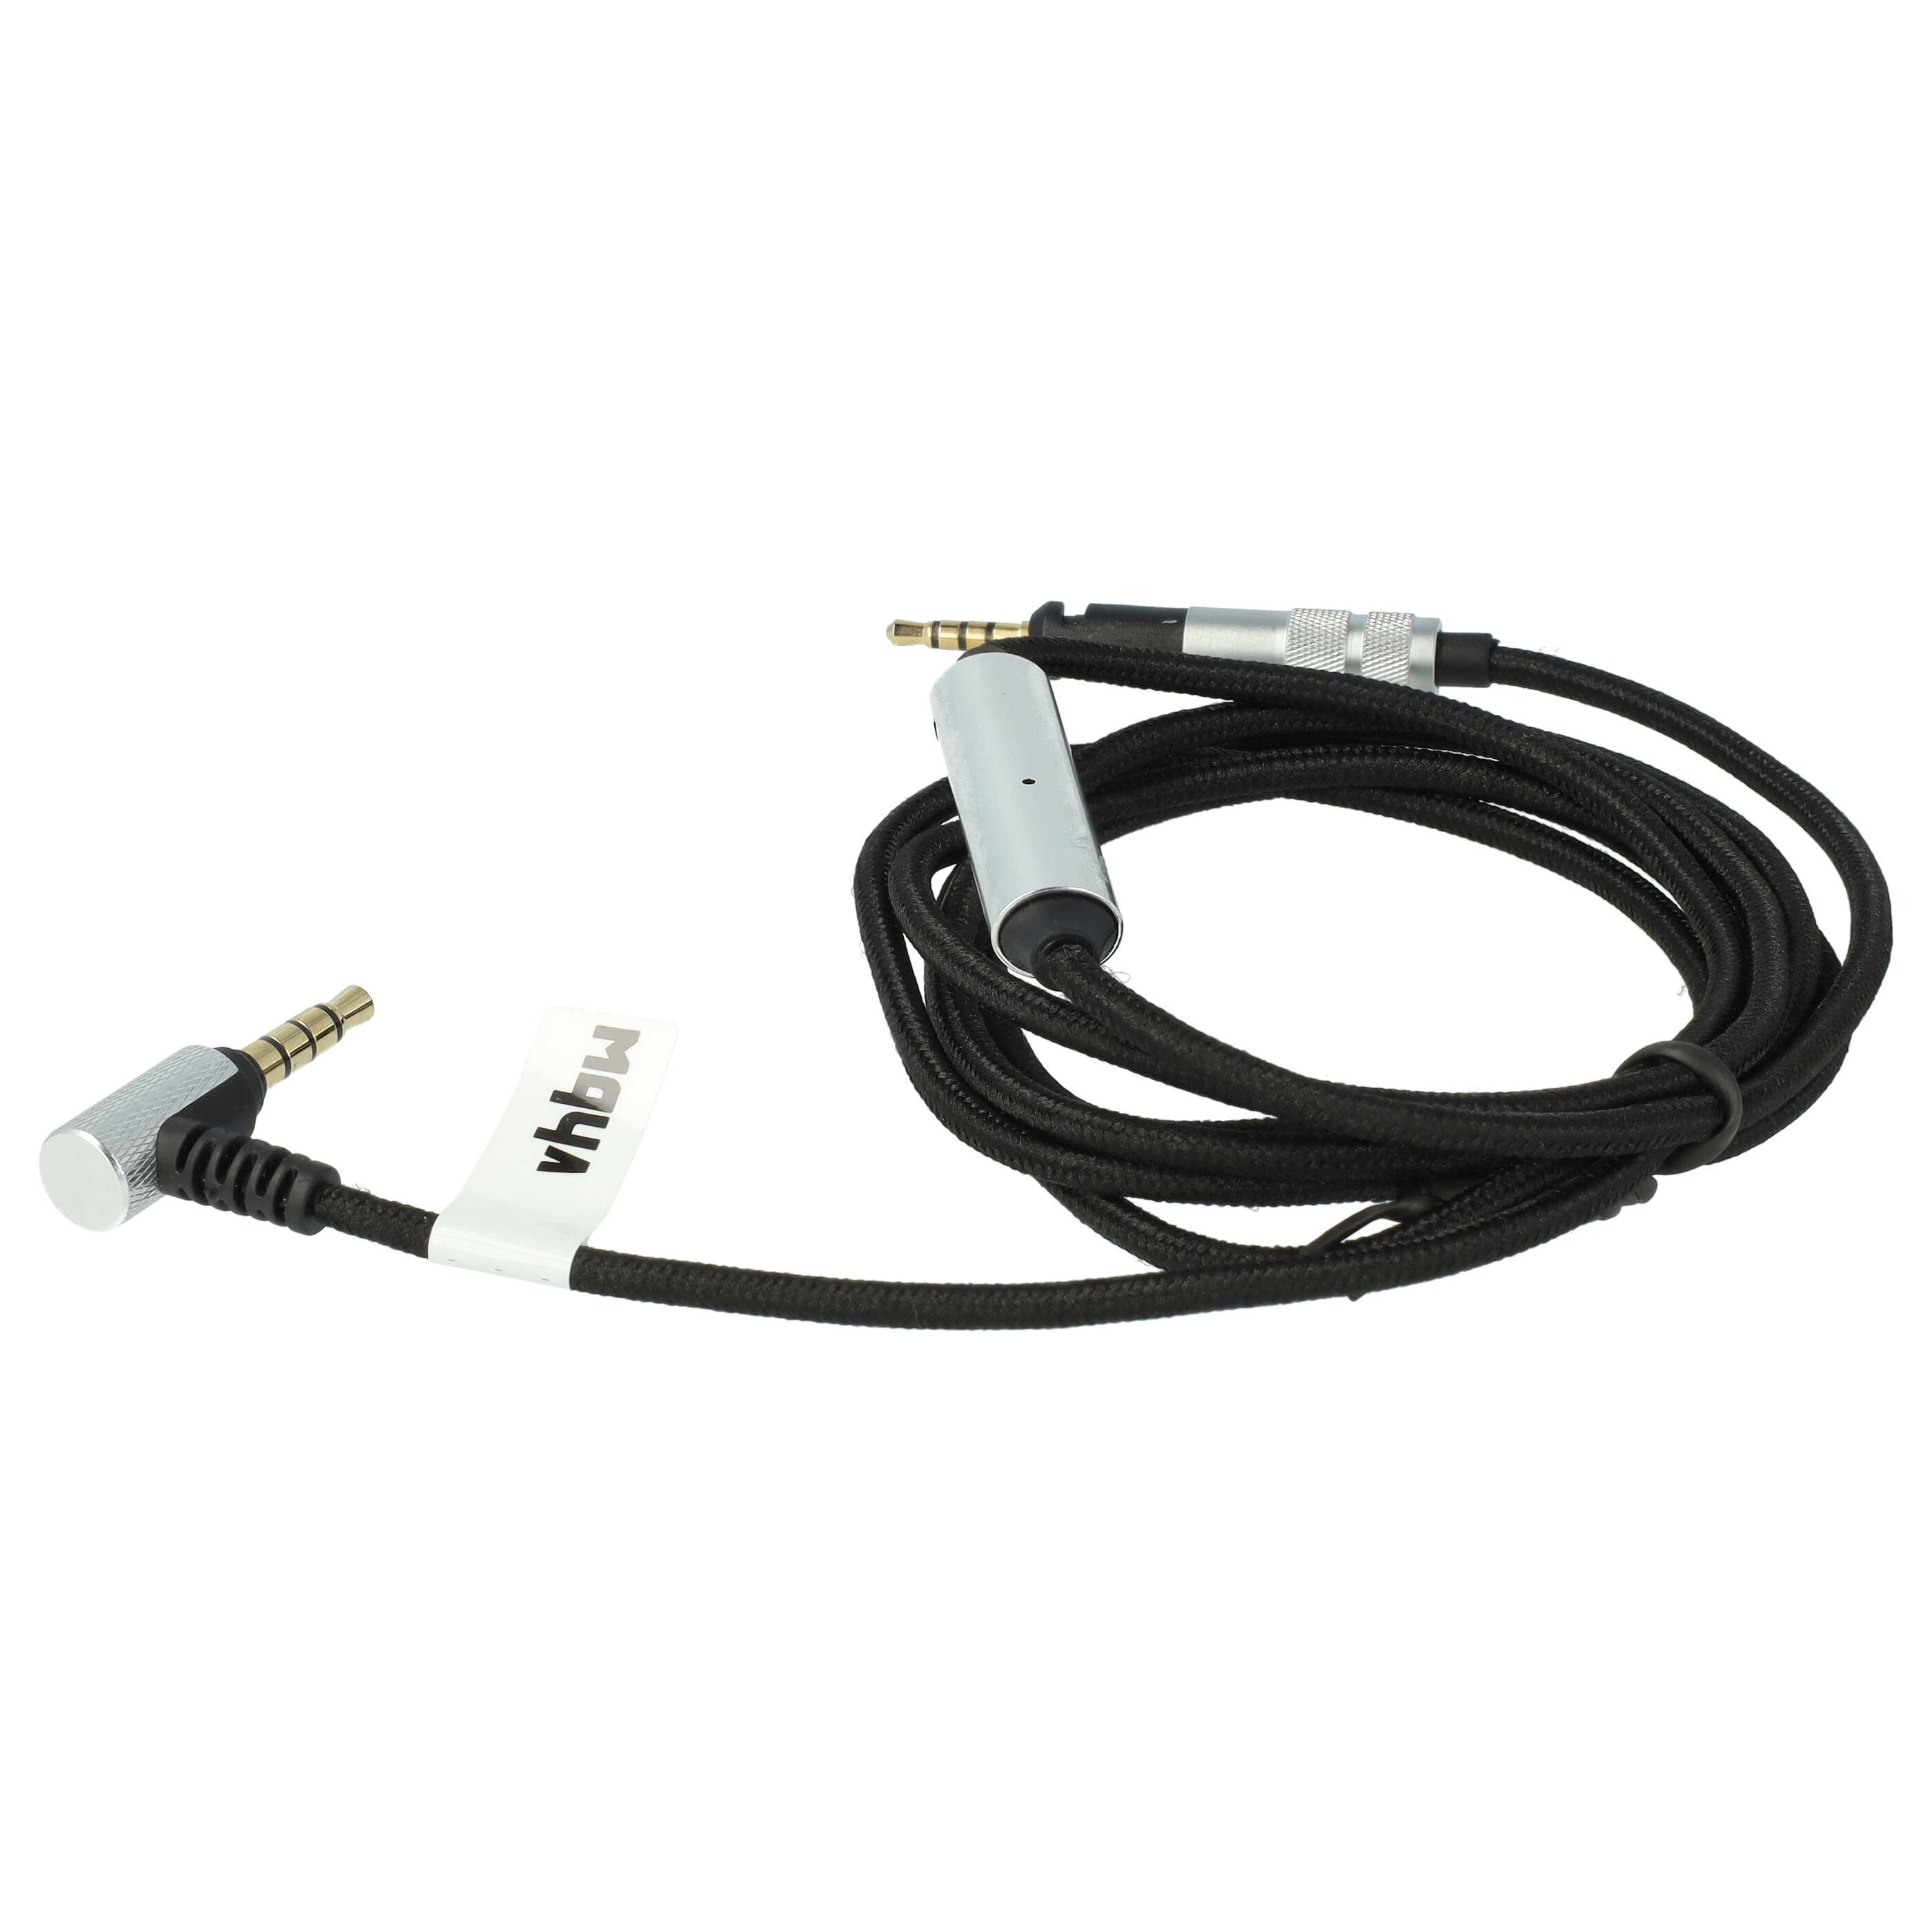 Câble audio pour casque AKG / Sennheiser / Bose et autres, 150 cm, noir / argenté